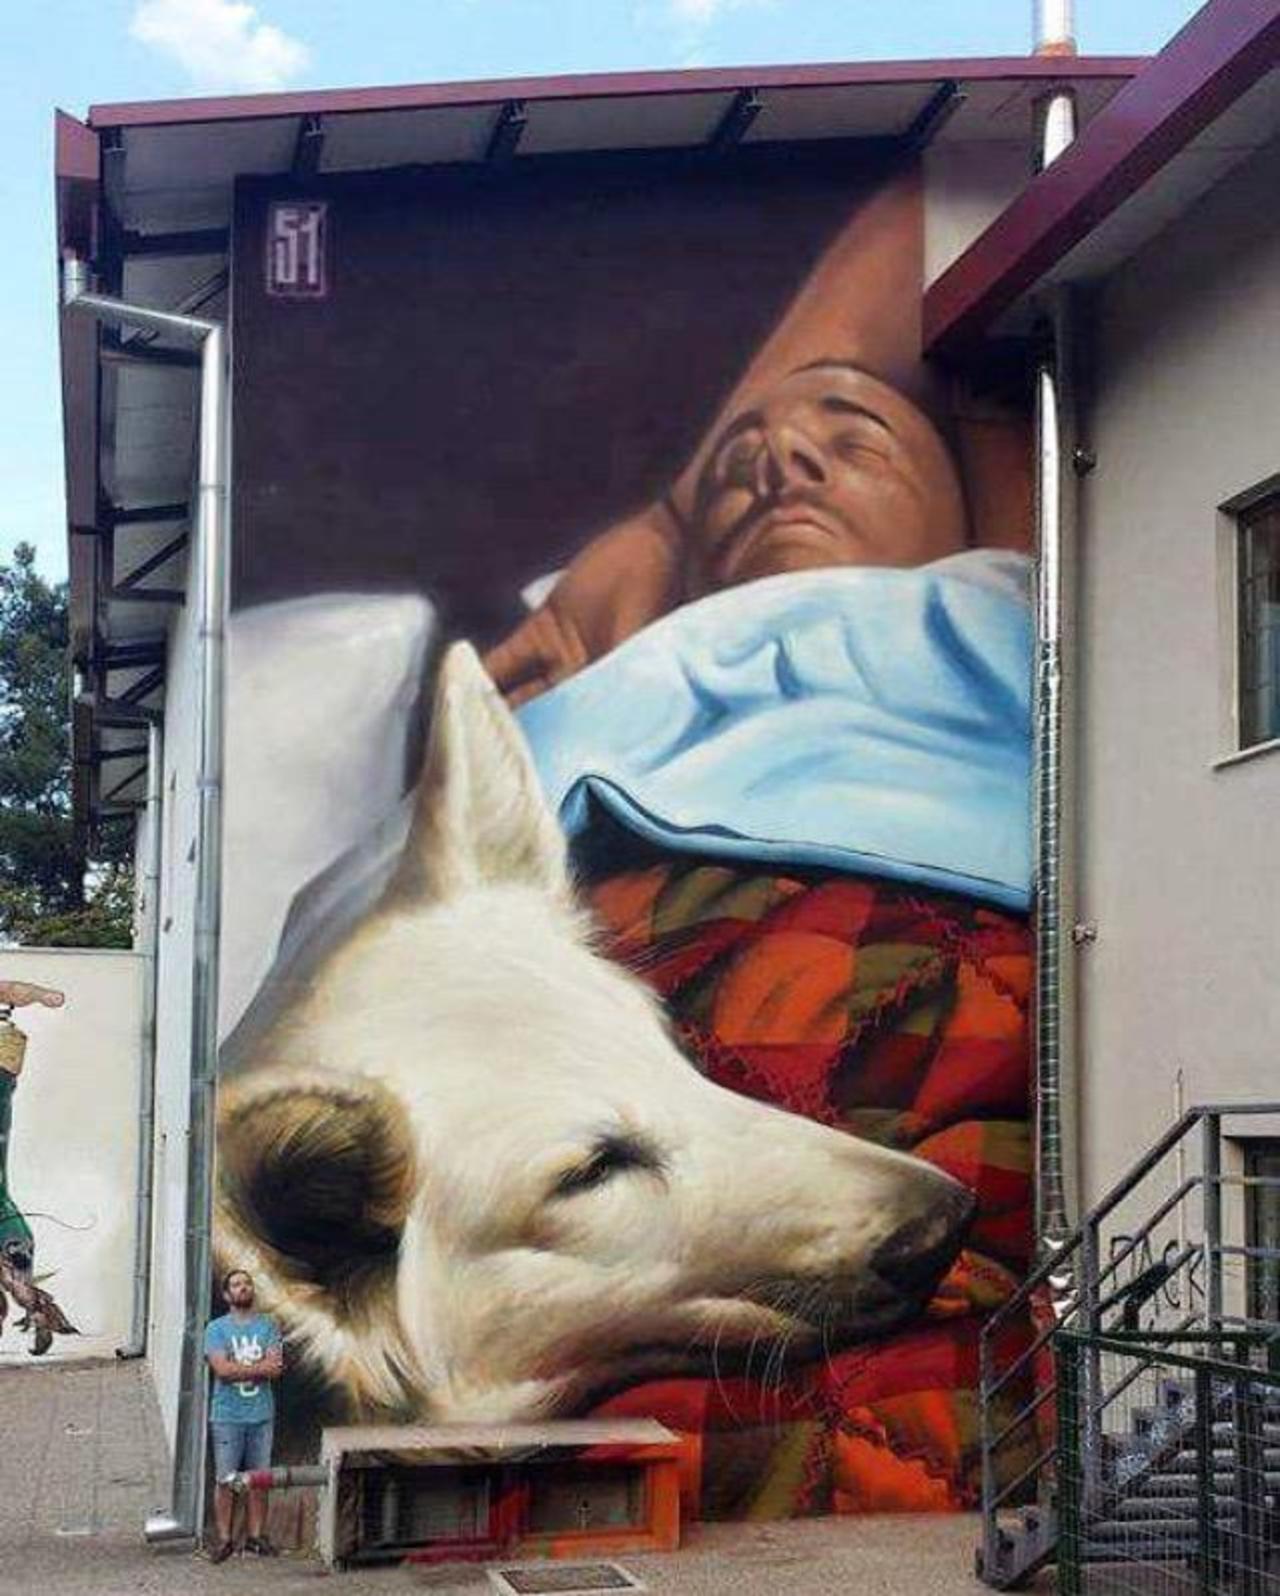 RT @LolammmoraLola: "@GoogleStreetArt: New Street Art by insane51 in Imathia, Greece.

#graffiti #mural #art #streetart http://t.co/F14vCS8Vic" ❤